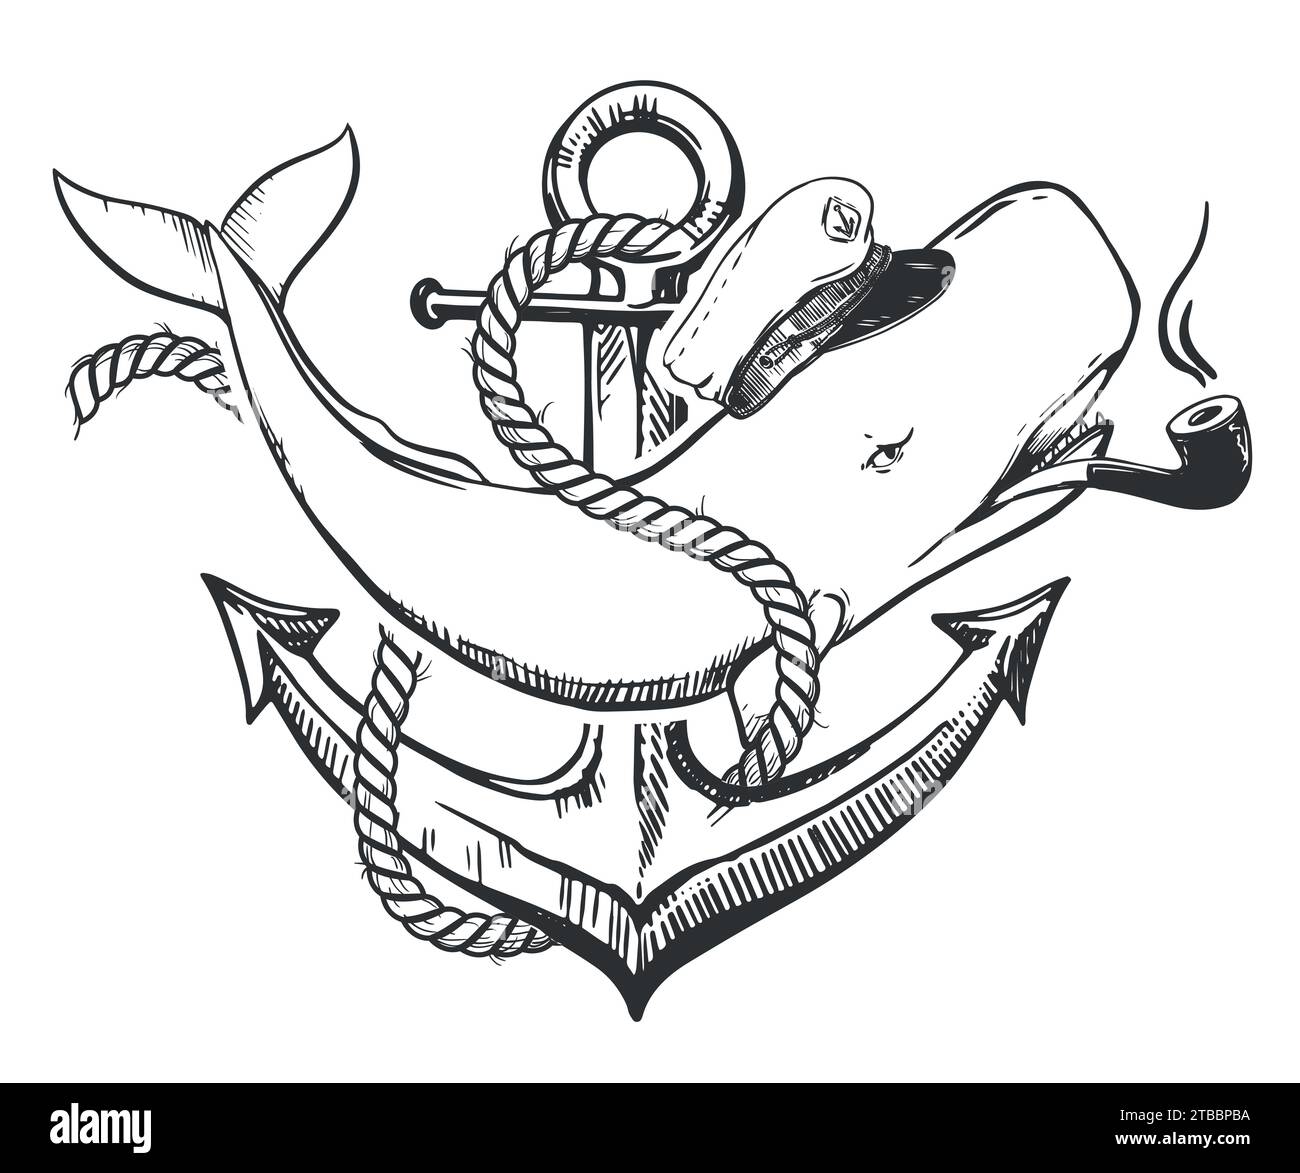 Cachalot blanc dans une casquette capitaine et avec une pipe à fumer dans la bouche. Une illustration créative d'une baleine enchevêtrée avec une corde à l'ancre. Old School Illustration de Vecteur